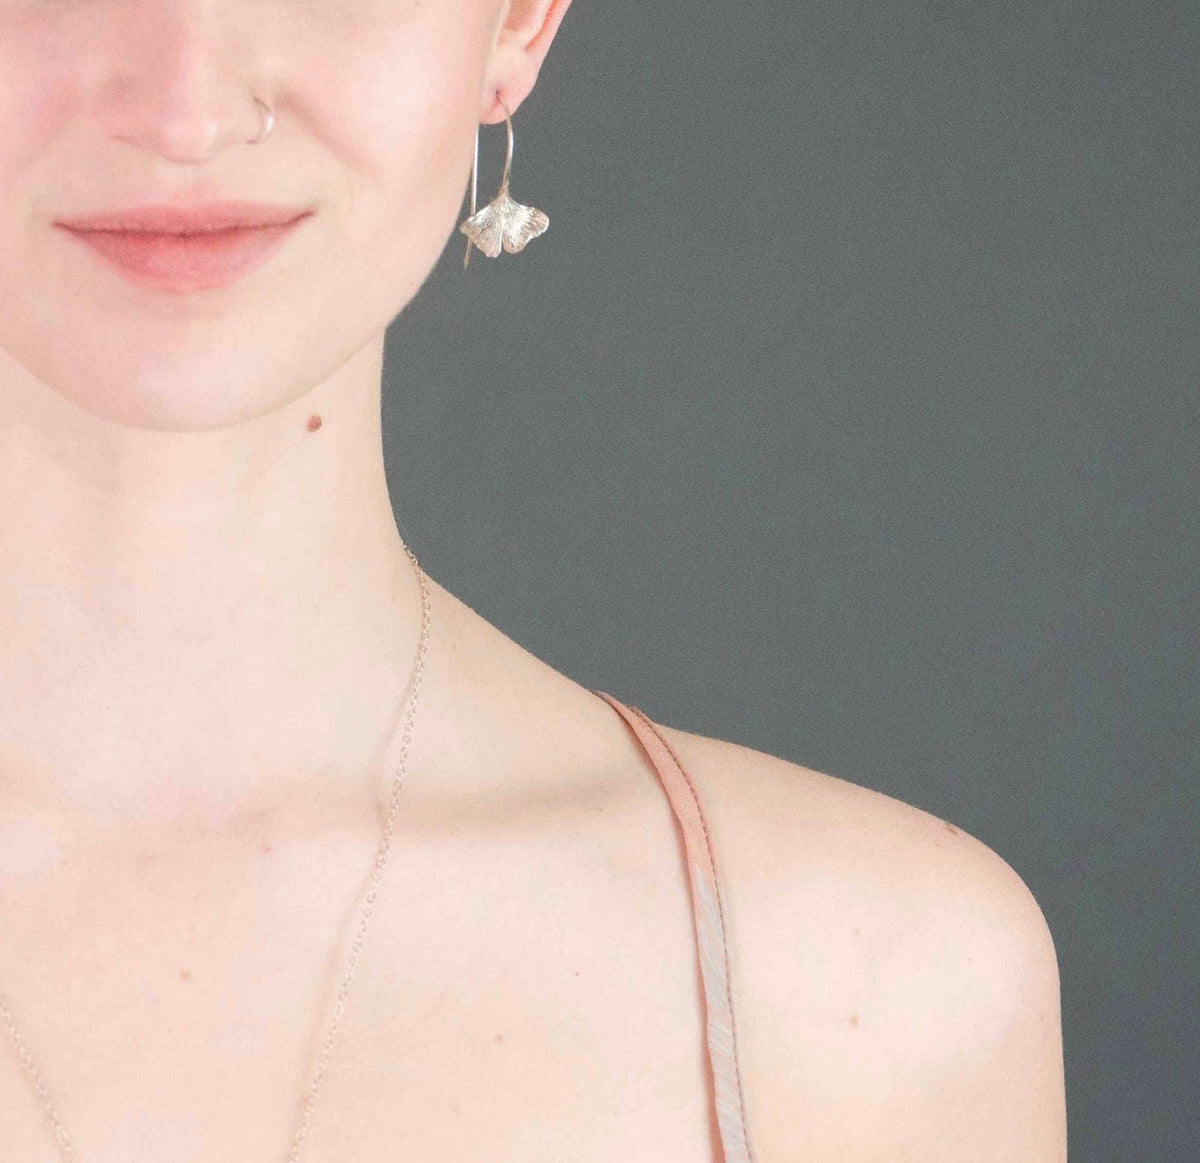 Ginko Leaf Earrings Sterling Silver Dangle earrings